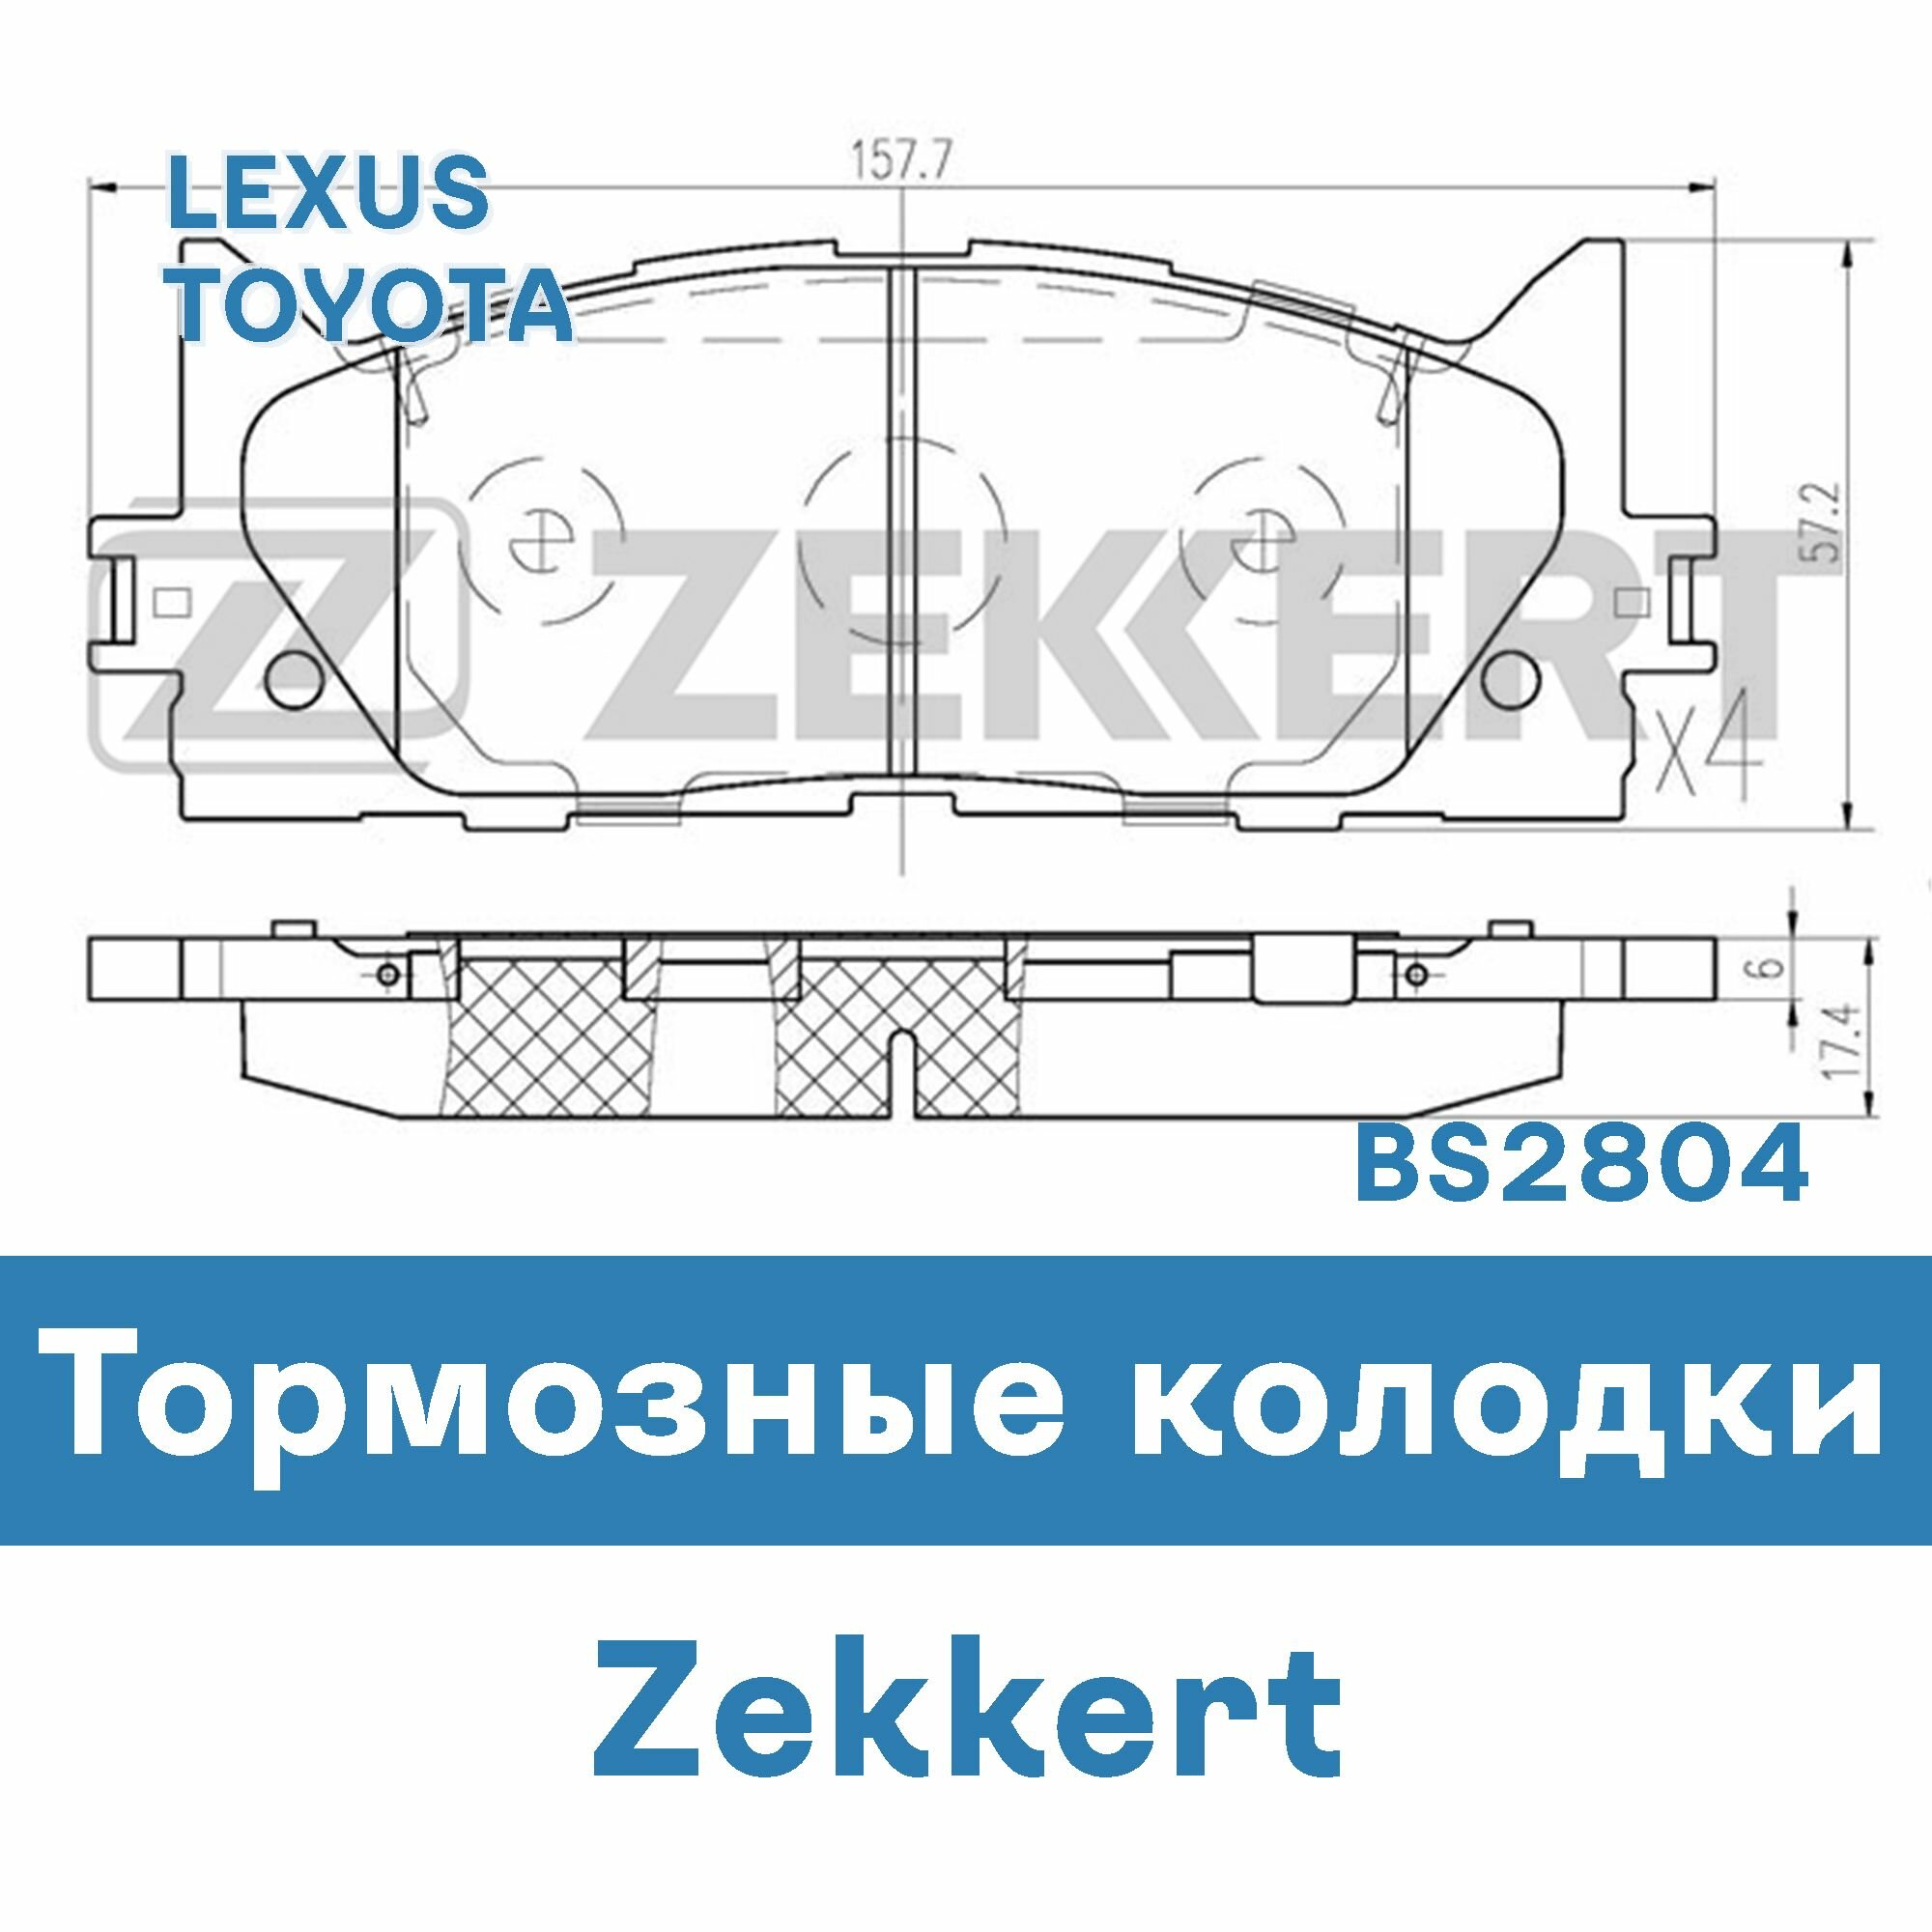 Тормозные колодки для LEXUS, TOYOTA BS2804 ZEKKERT